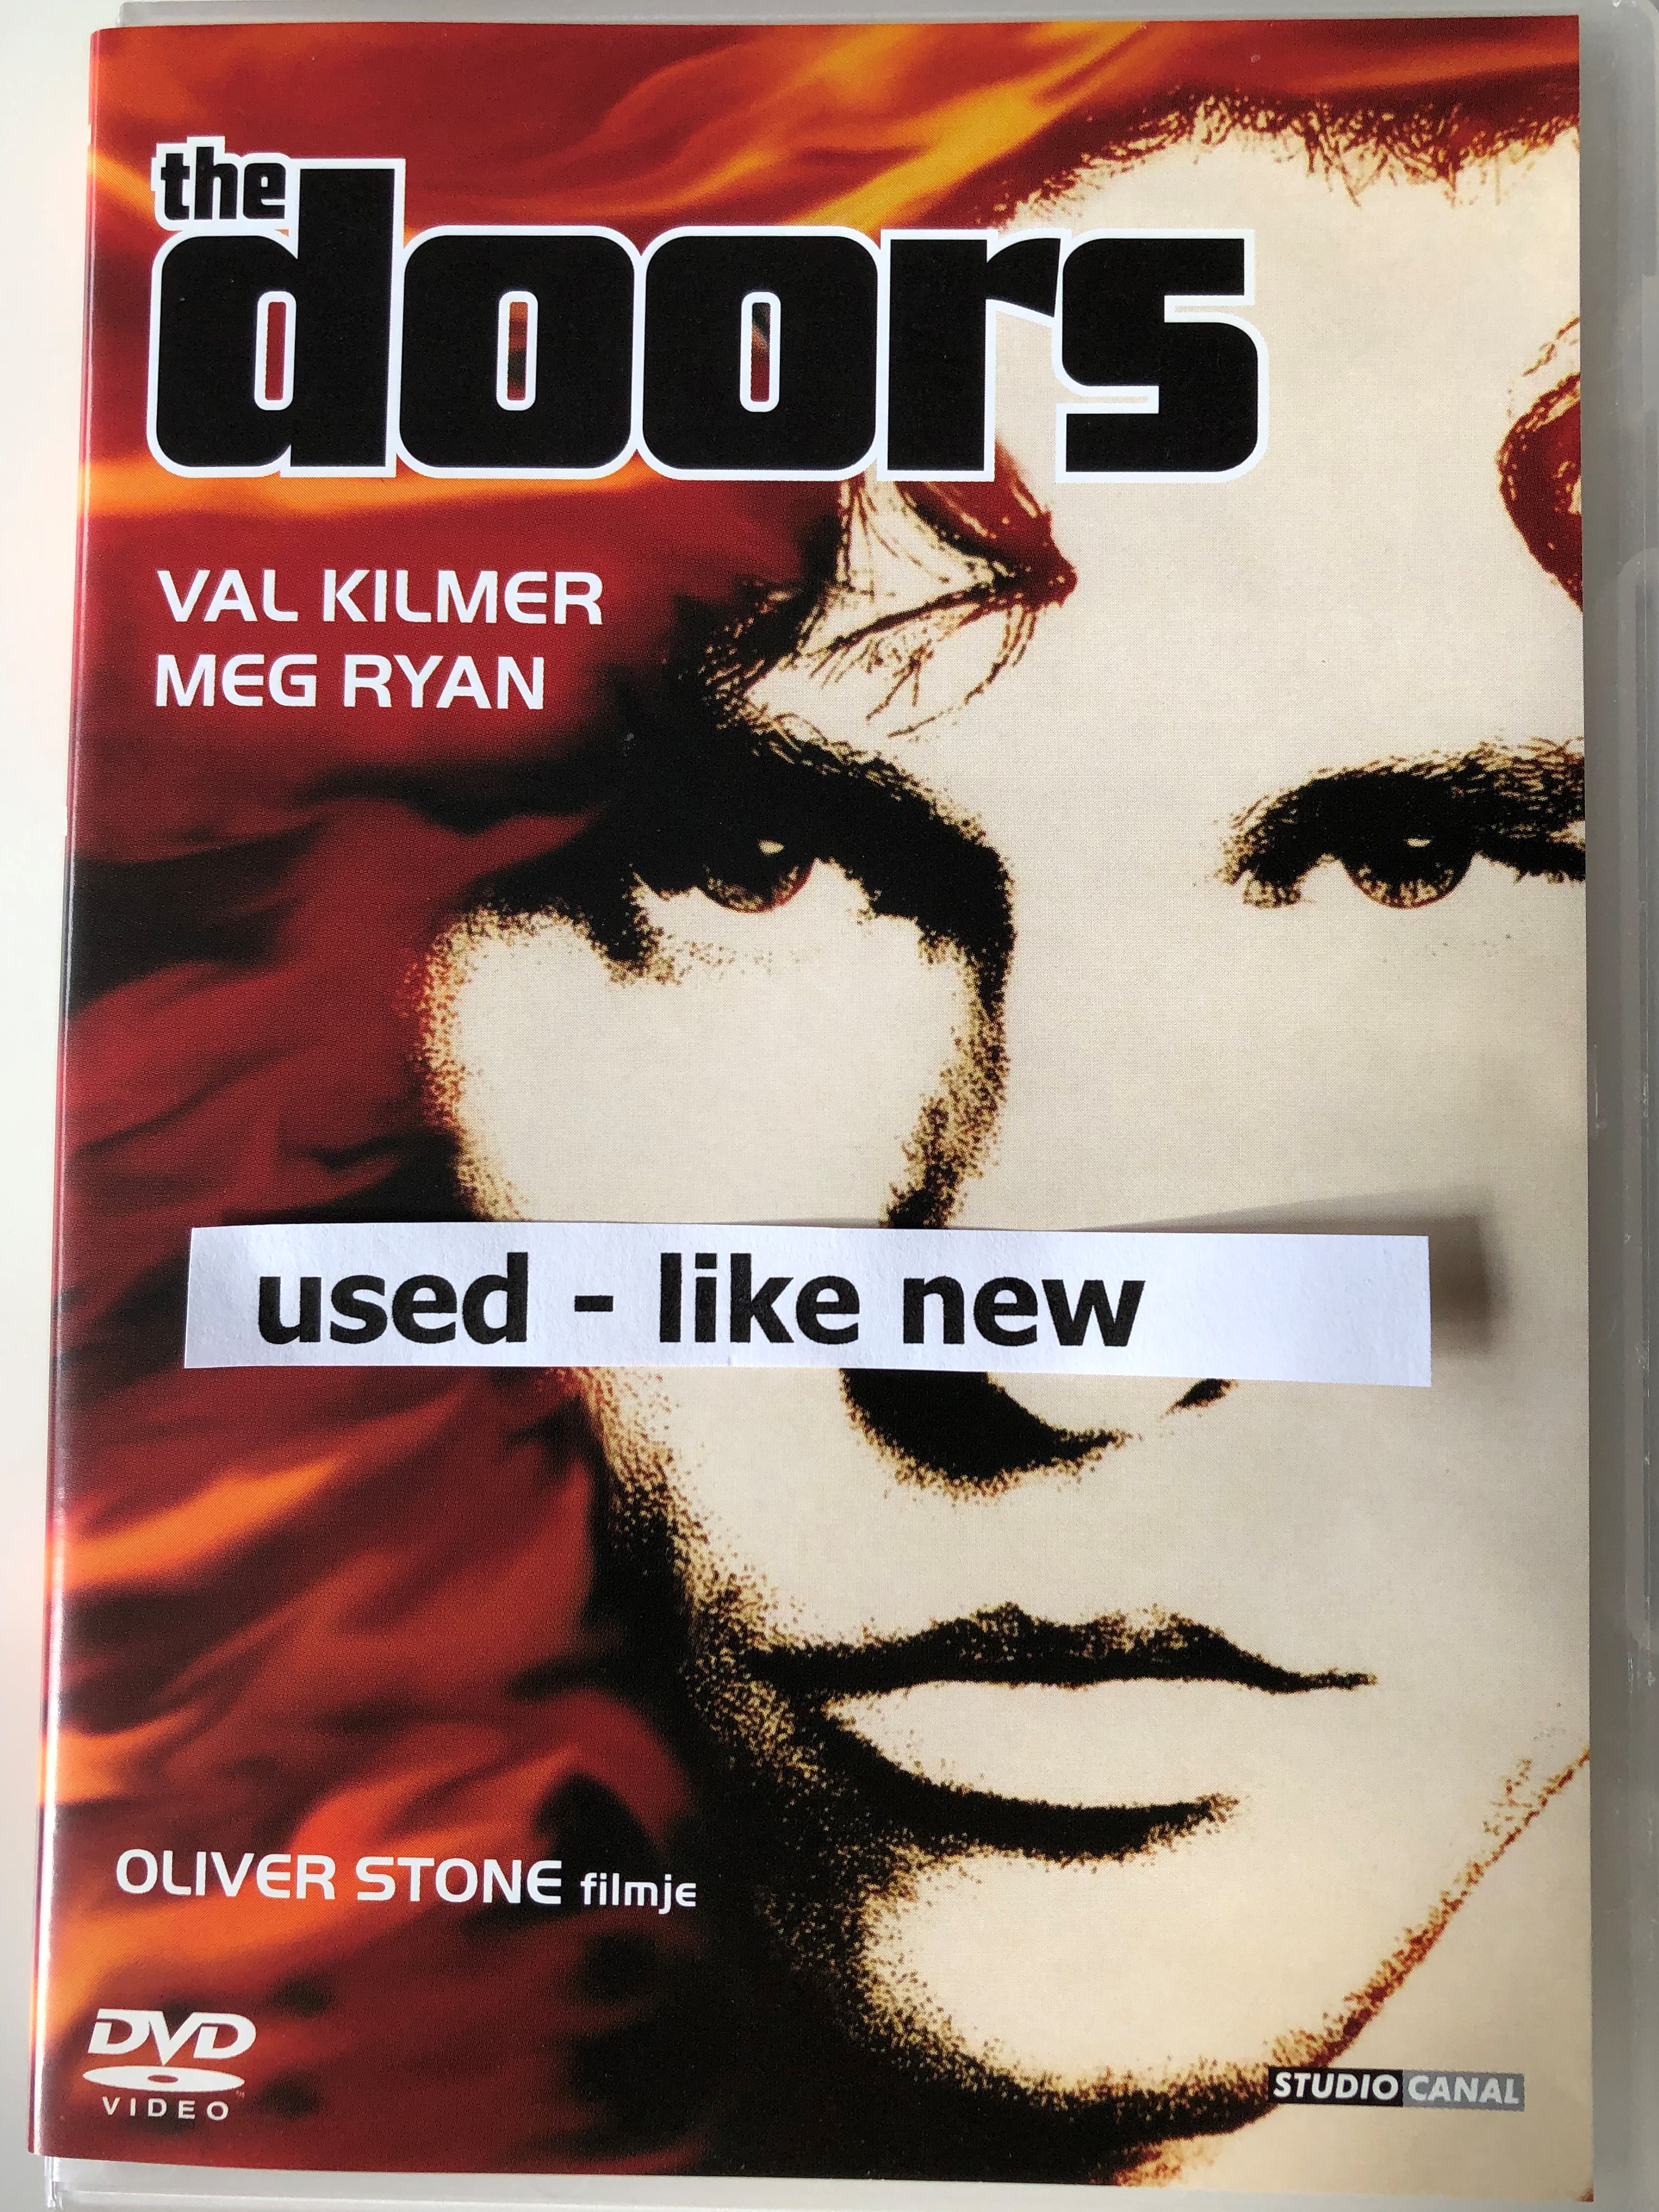 the-doors-1991-dvd-3.jpg